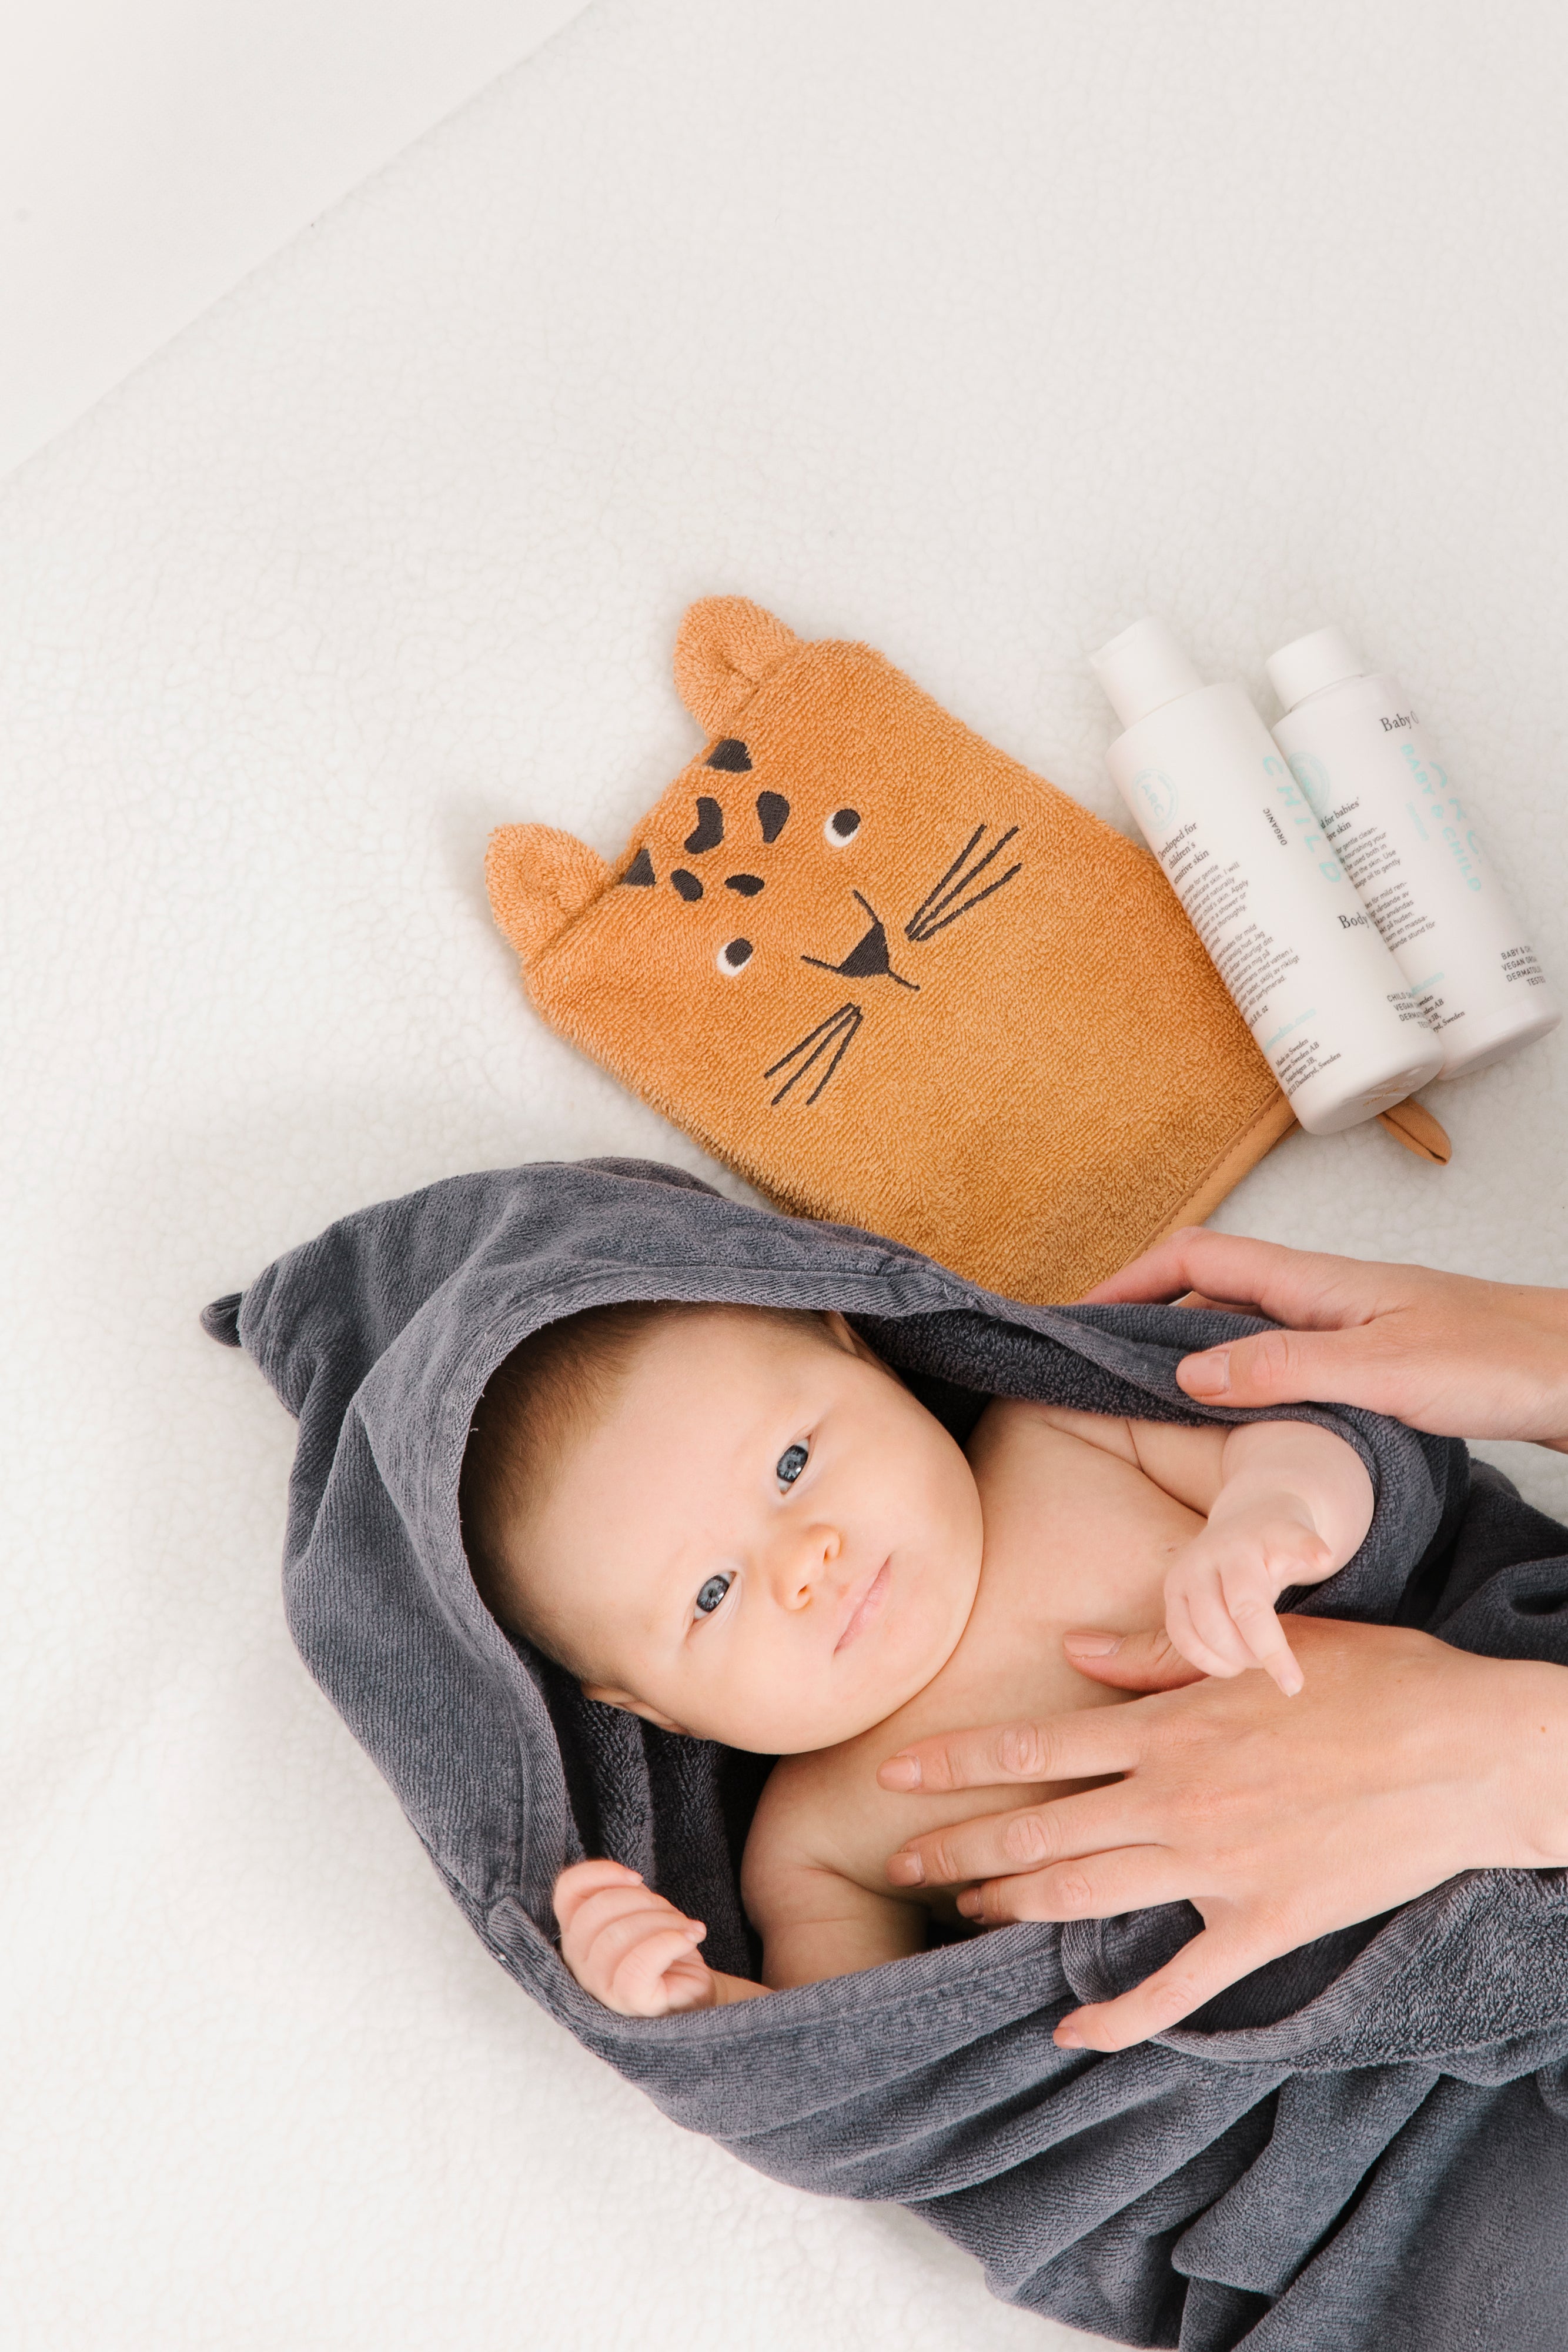 Bebis i handduk bredvid ARC produkter